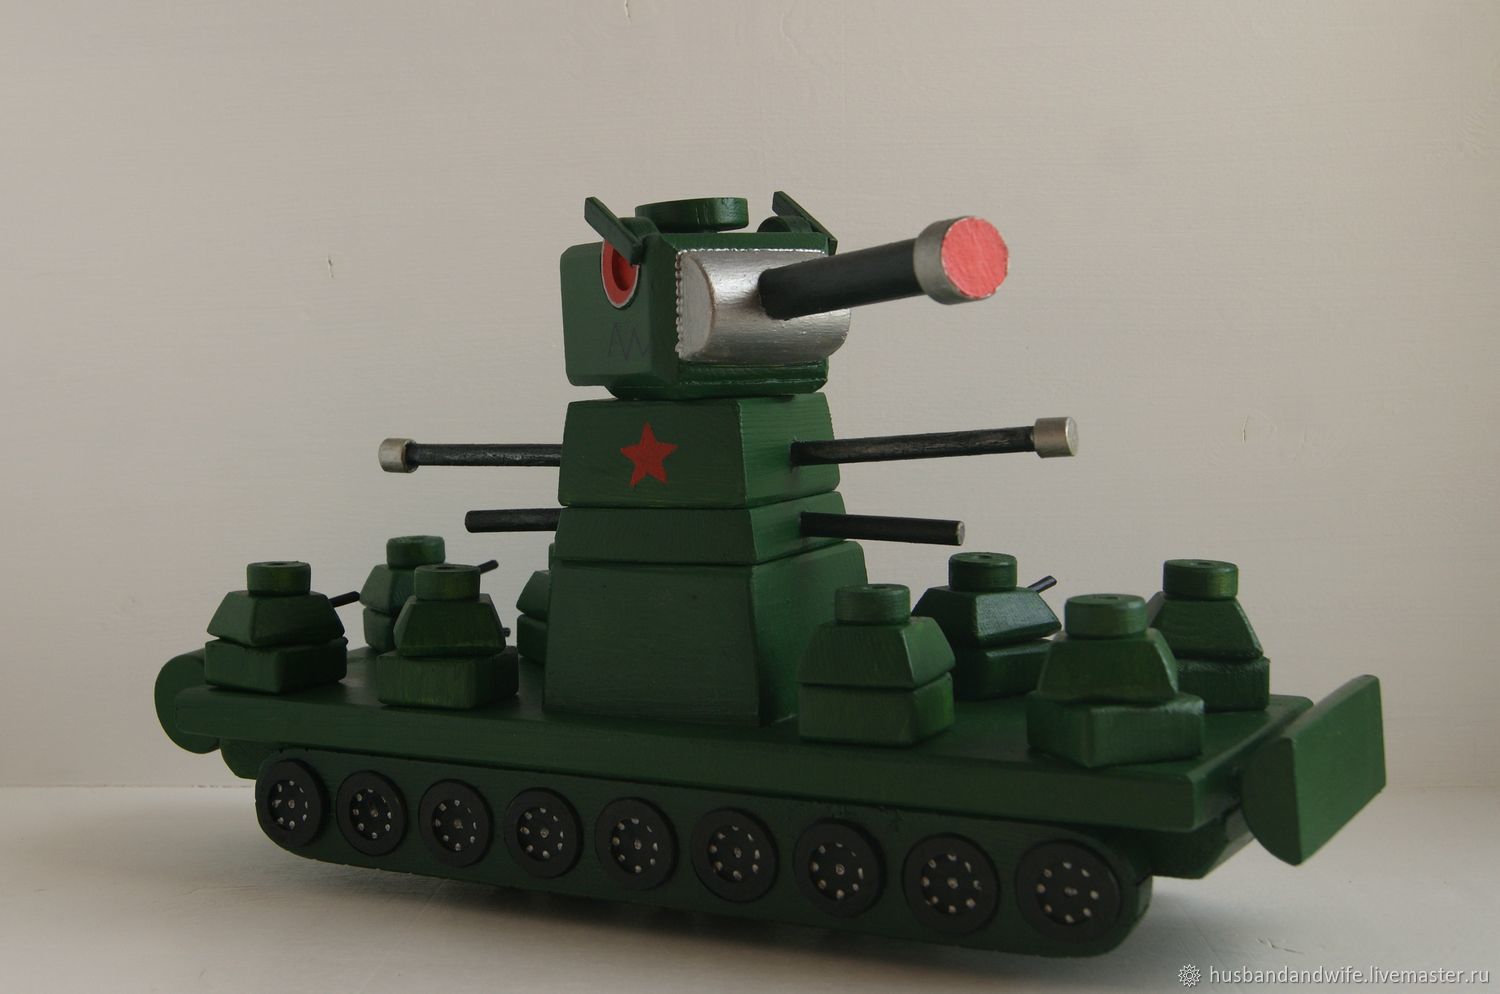 Кв 44 танк игрушка. Игрушечный танк кв 44. Радиоуправляемый танк кв 44.